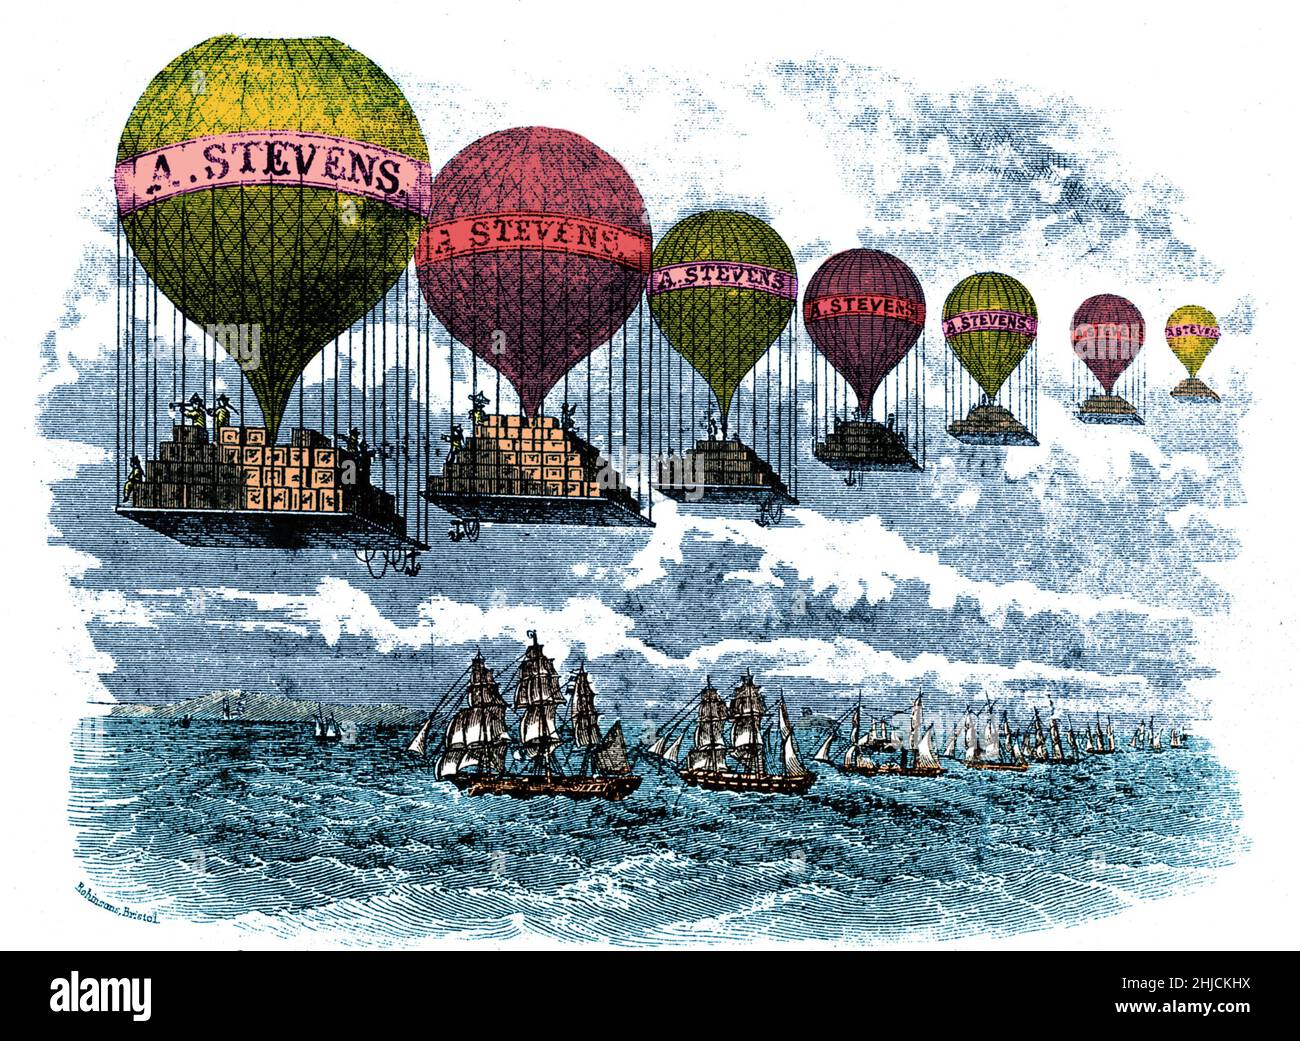 Eine Holzgravur aus dem 19th. Jahrhundert einer Reihe von Heißluftballons, die mit Kartons beladen sind und für „A.. Stevens und unterwegs über eine Reihe von Segelschiffen. Farbverstärkter. Stockfoto